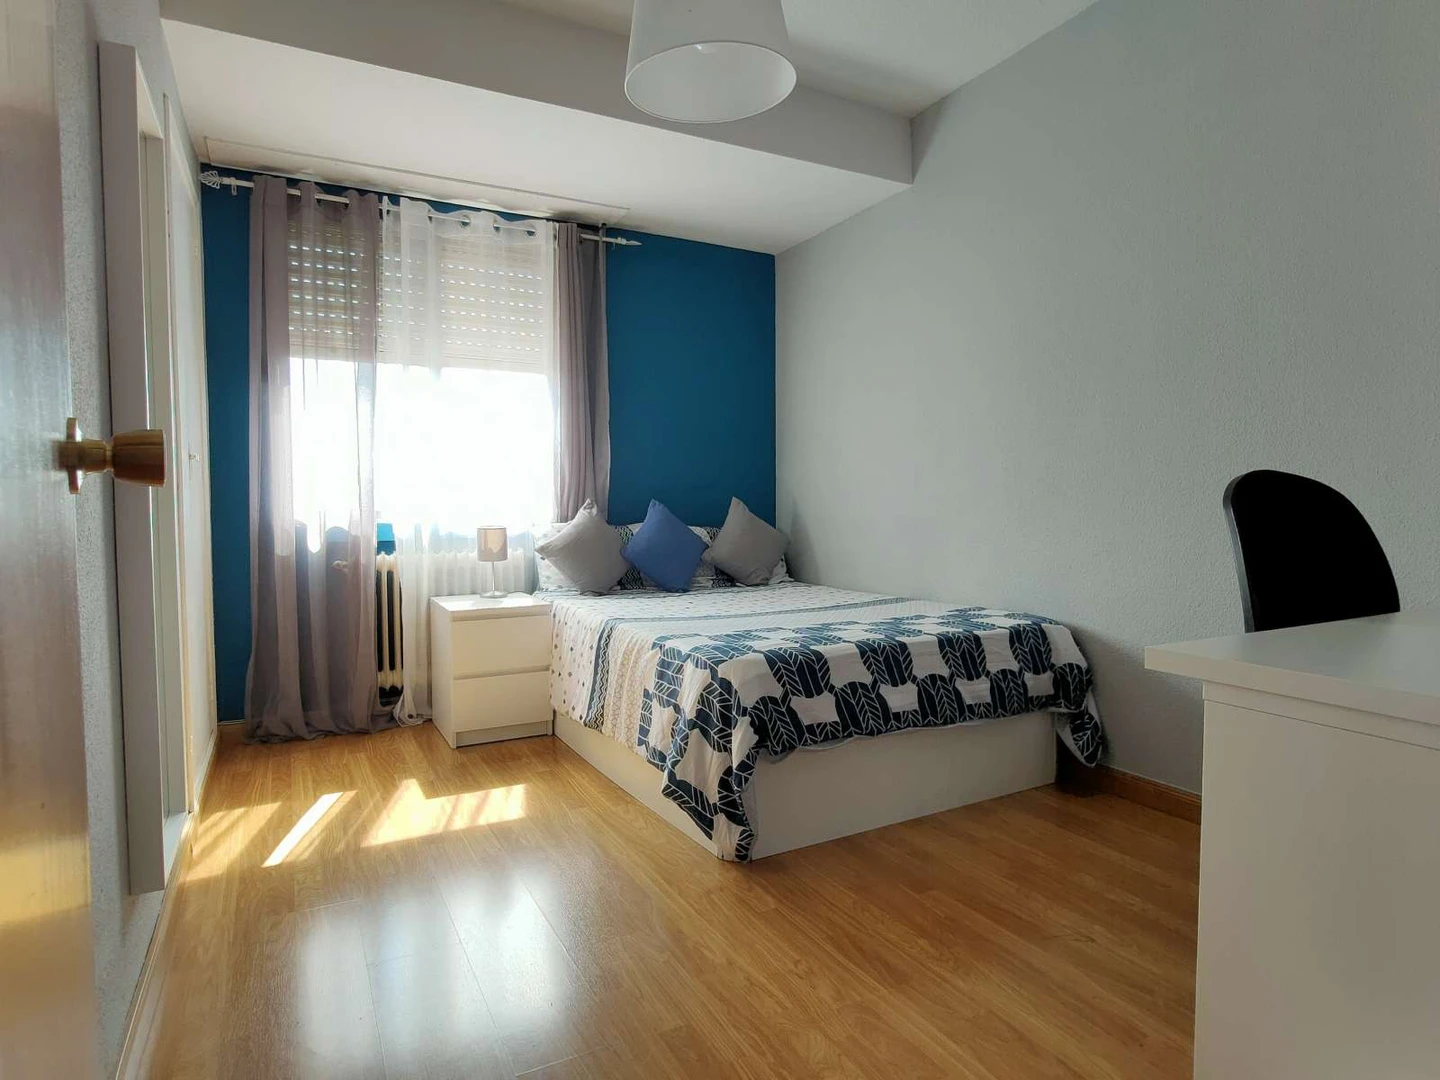 Chambre à louer dans un appartement en colocation à alcala-de-henares